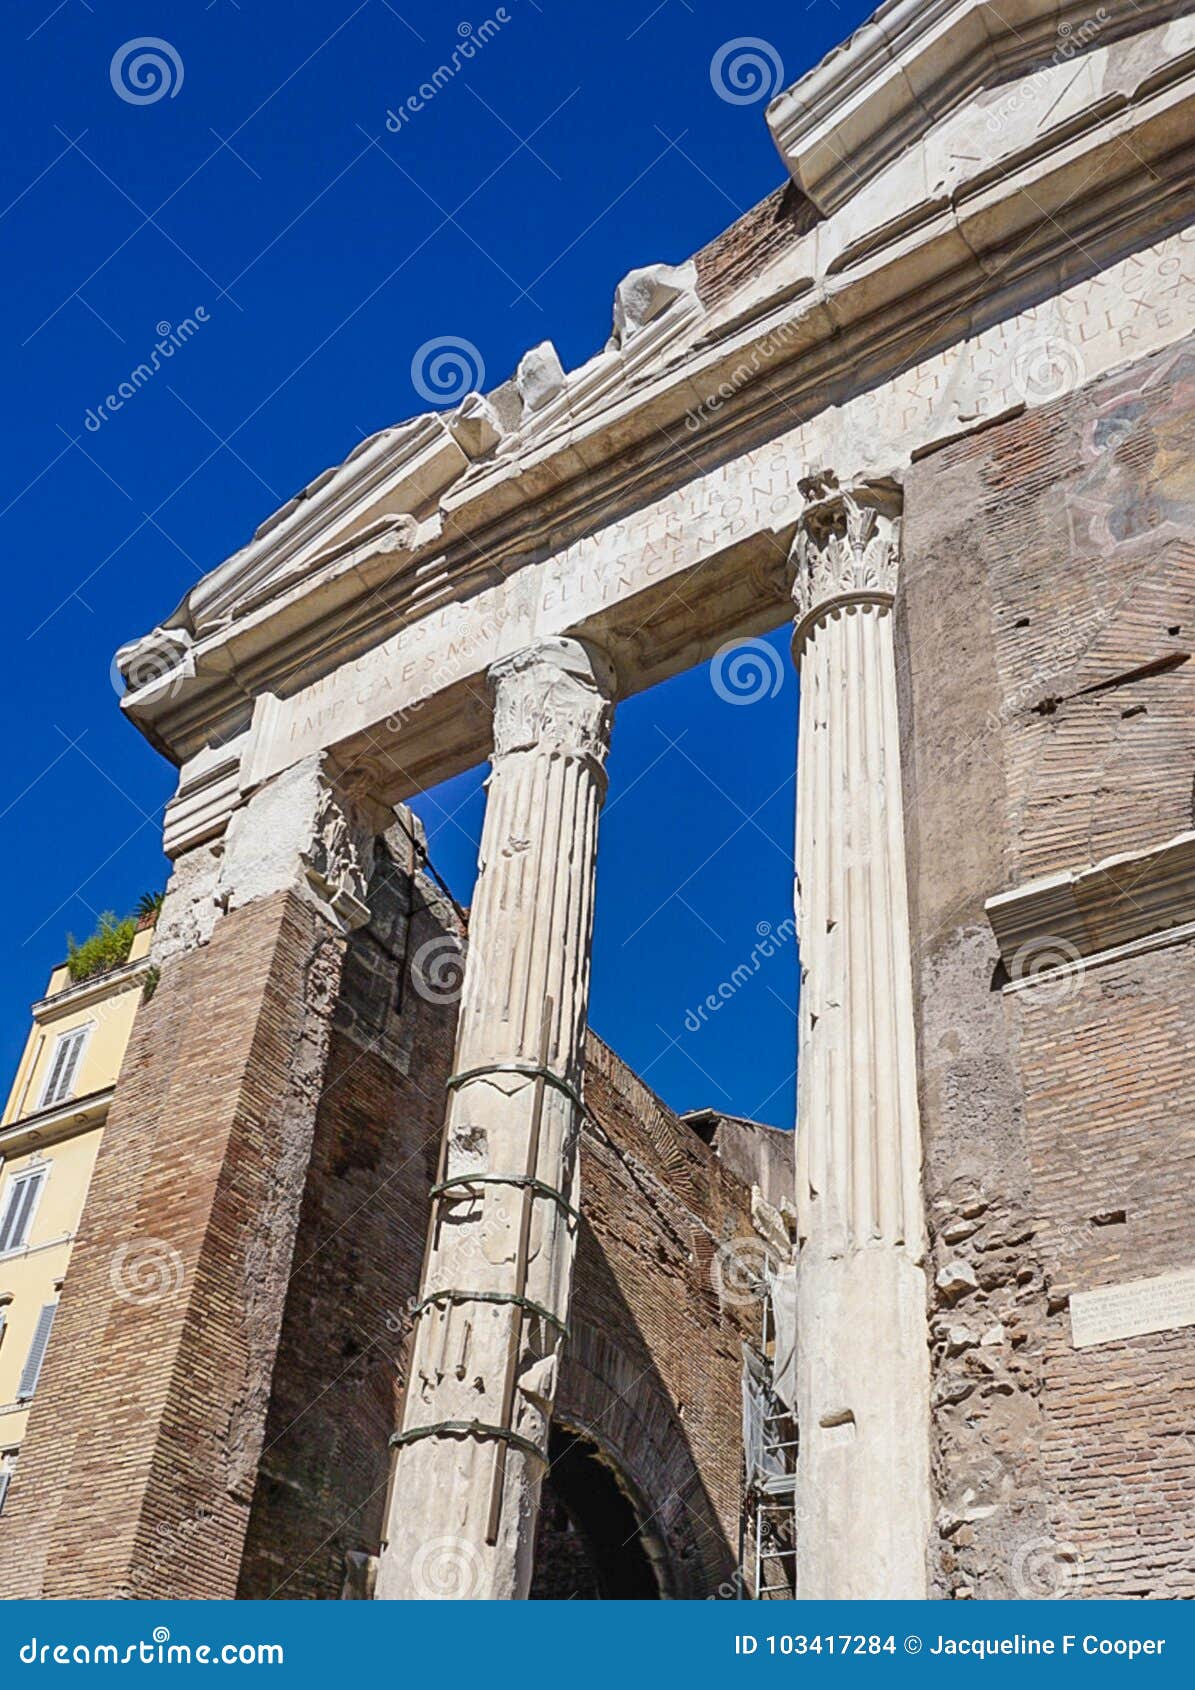 teatro marcello and portico d`ottavia ruins in rome italy